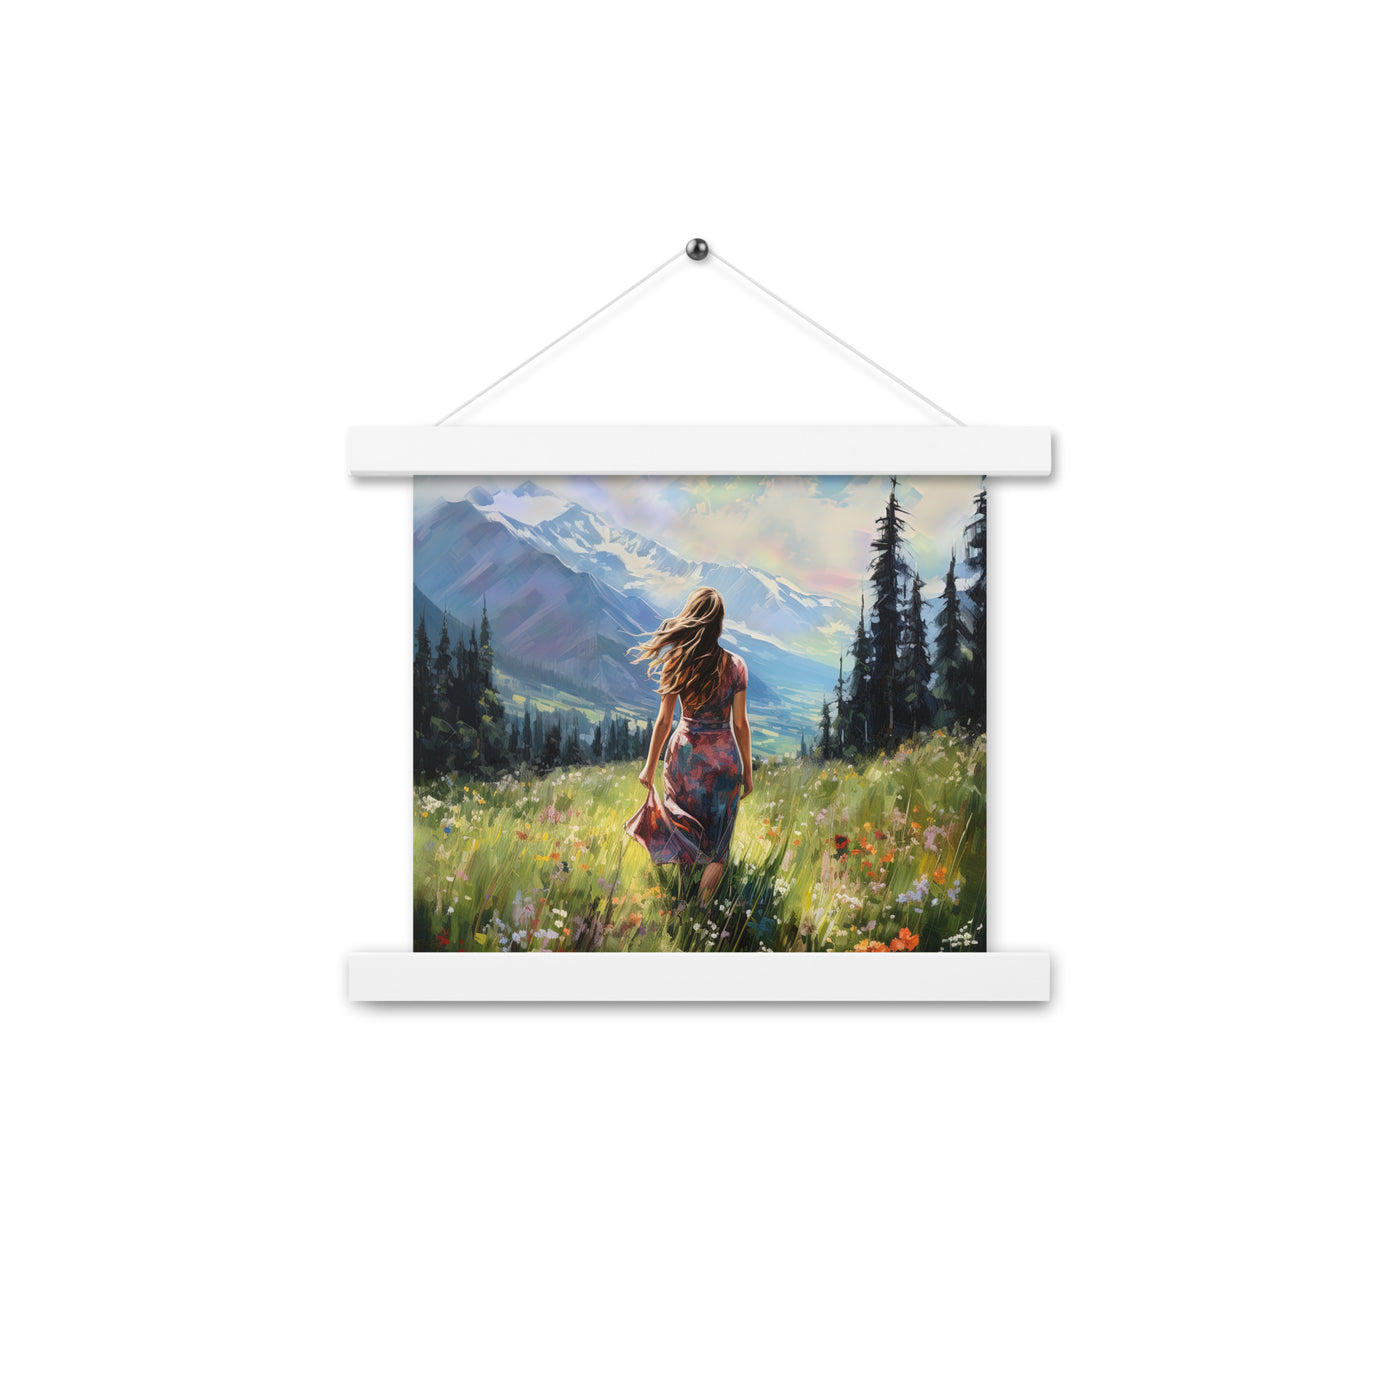 Frau mit langen Kleid im Feld mit Blumen - Berge im Hintergrund - Malerei - Premium Poster mit Aufhängung berge xxx 25.4 x 25.4 cm